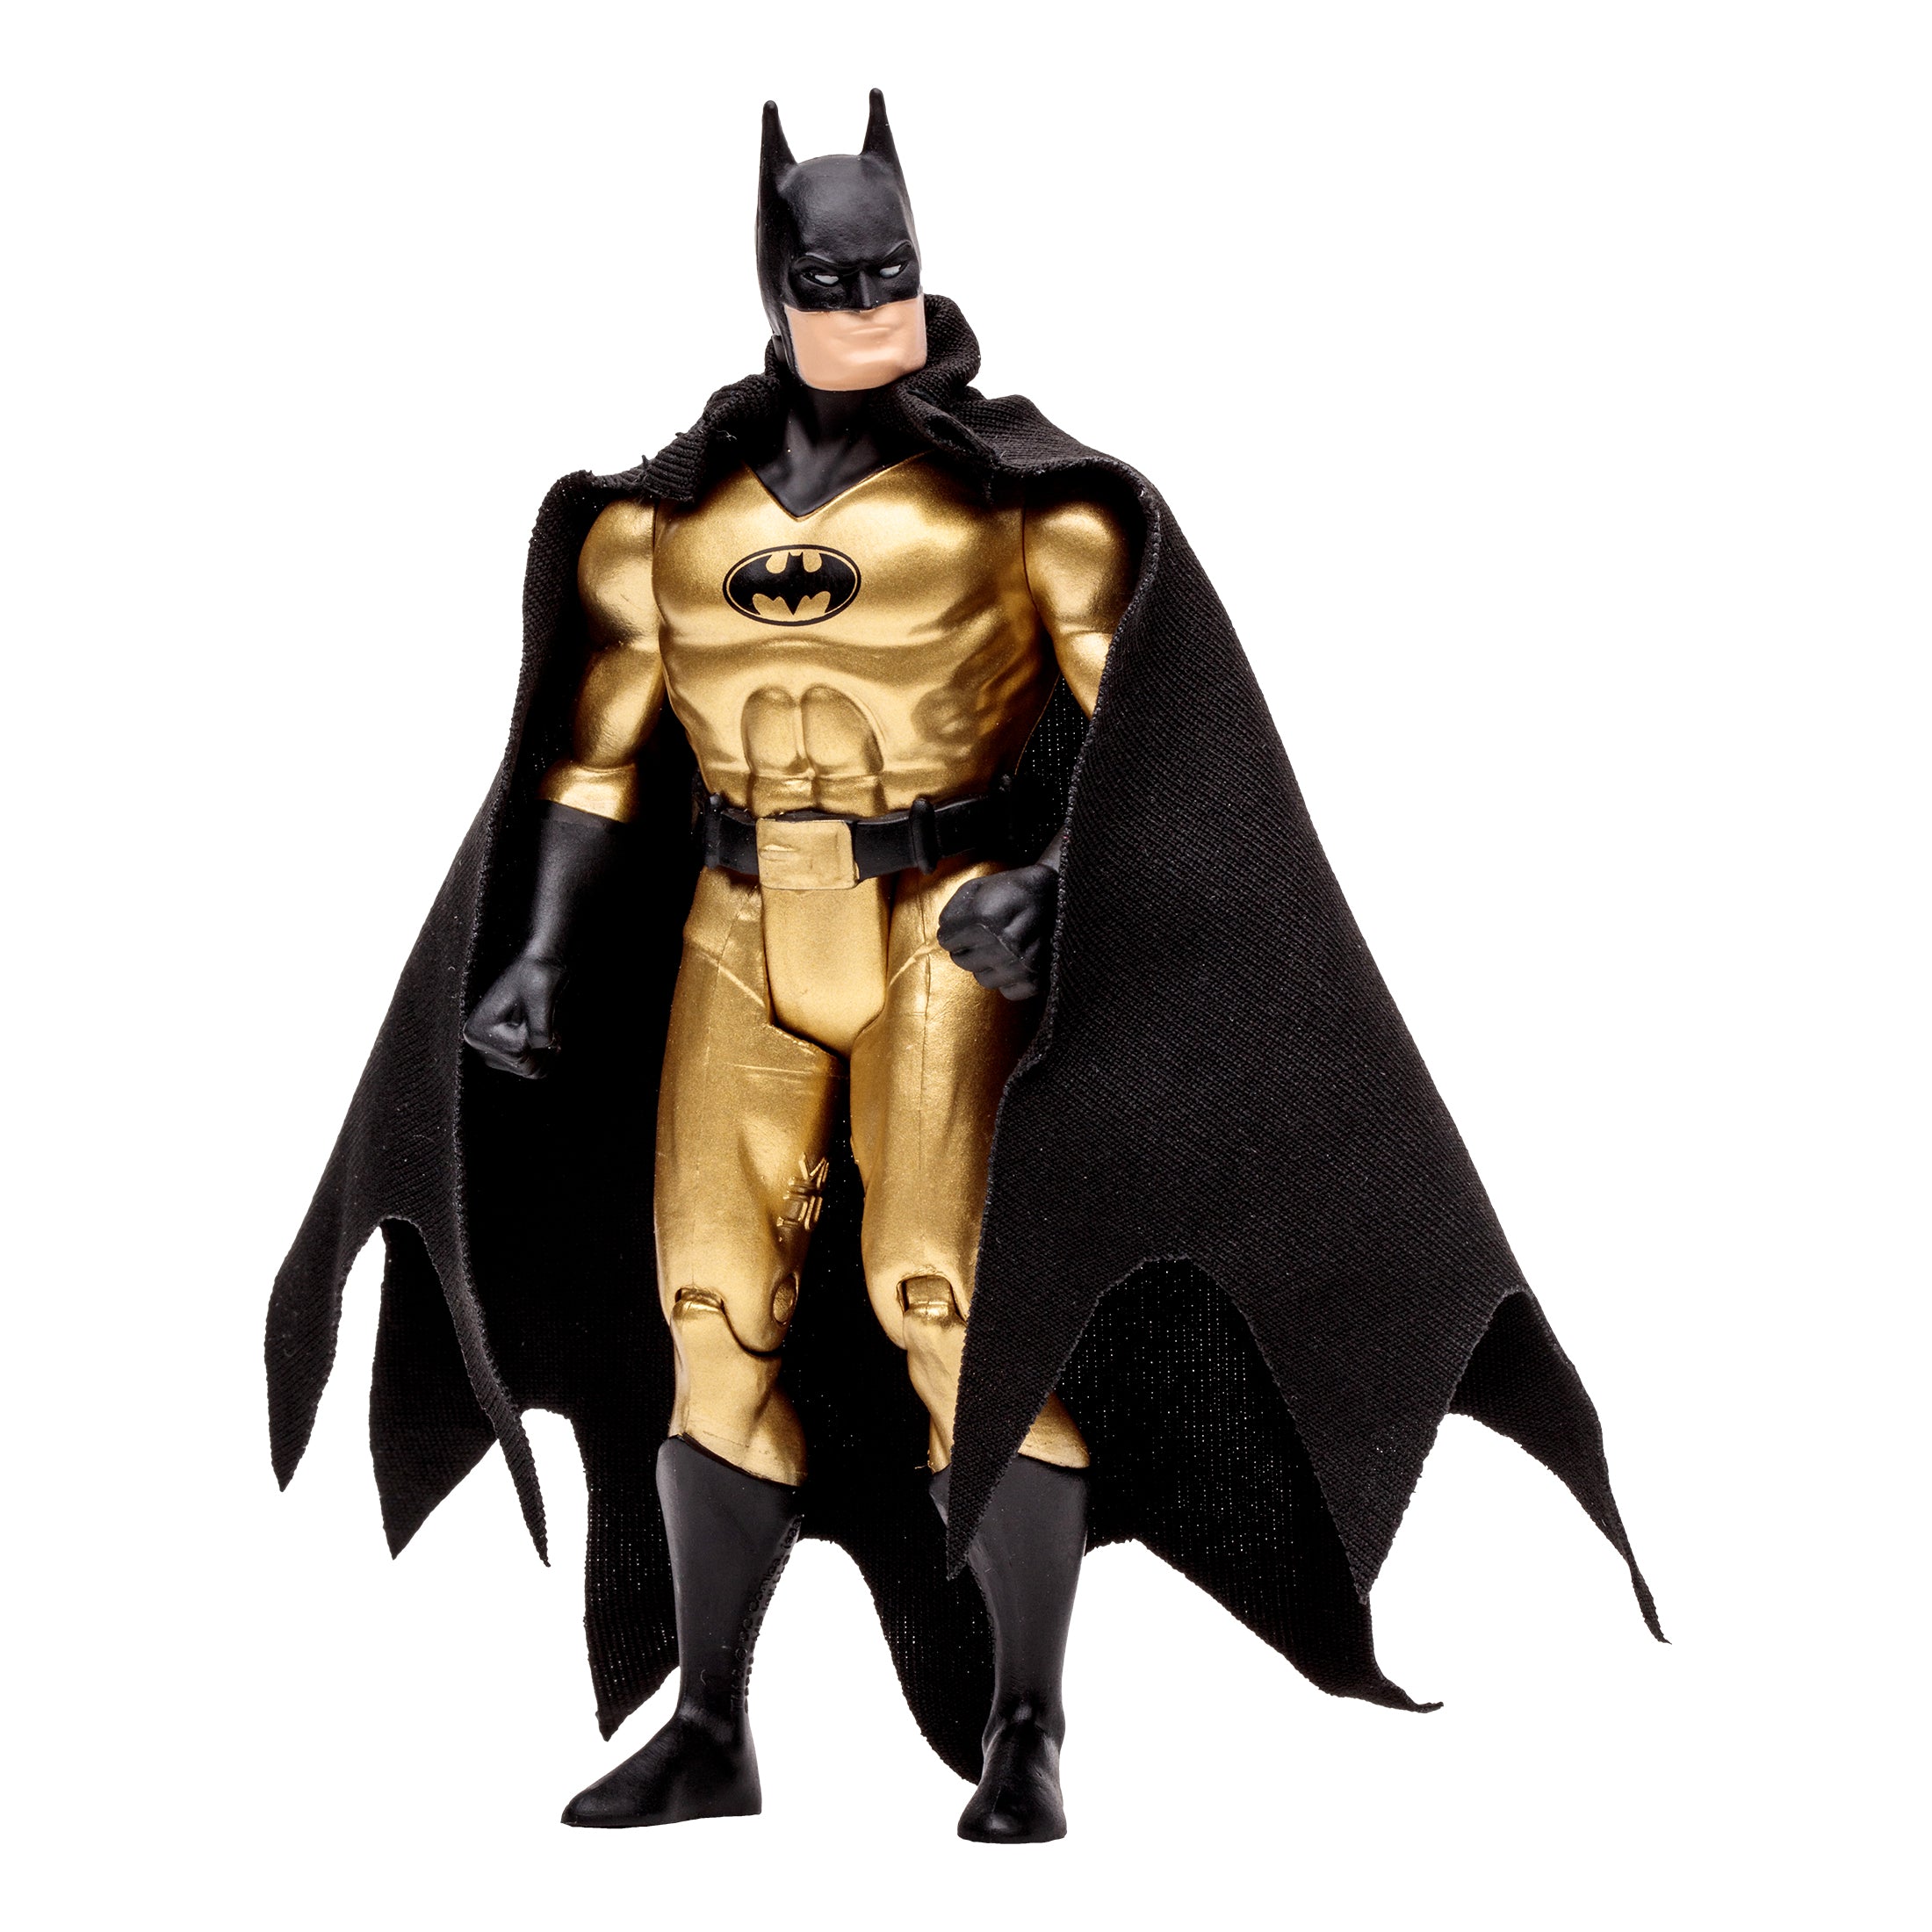 DC Direct Super Powers Figura de Accion: DC Comics Batman - Batman Gold Variant 4.5 Pulgadas